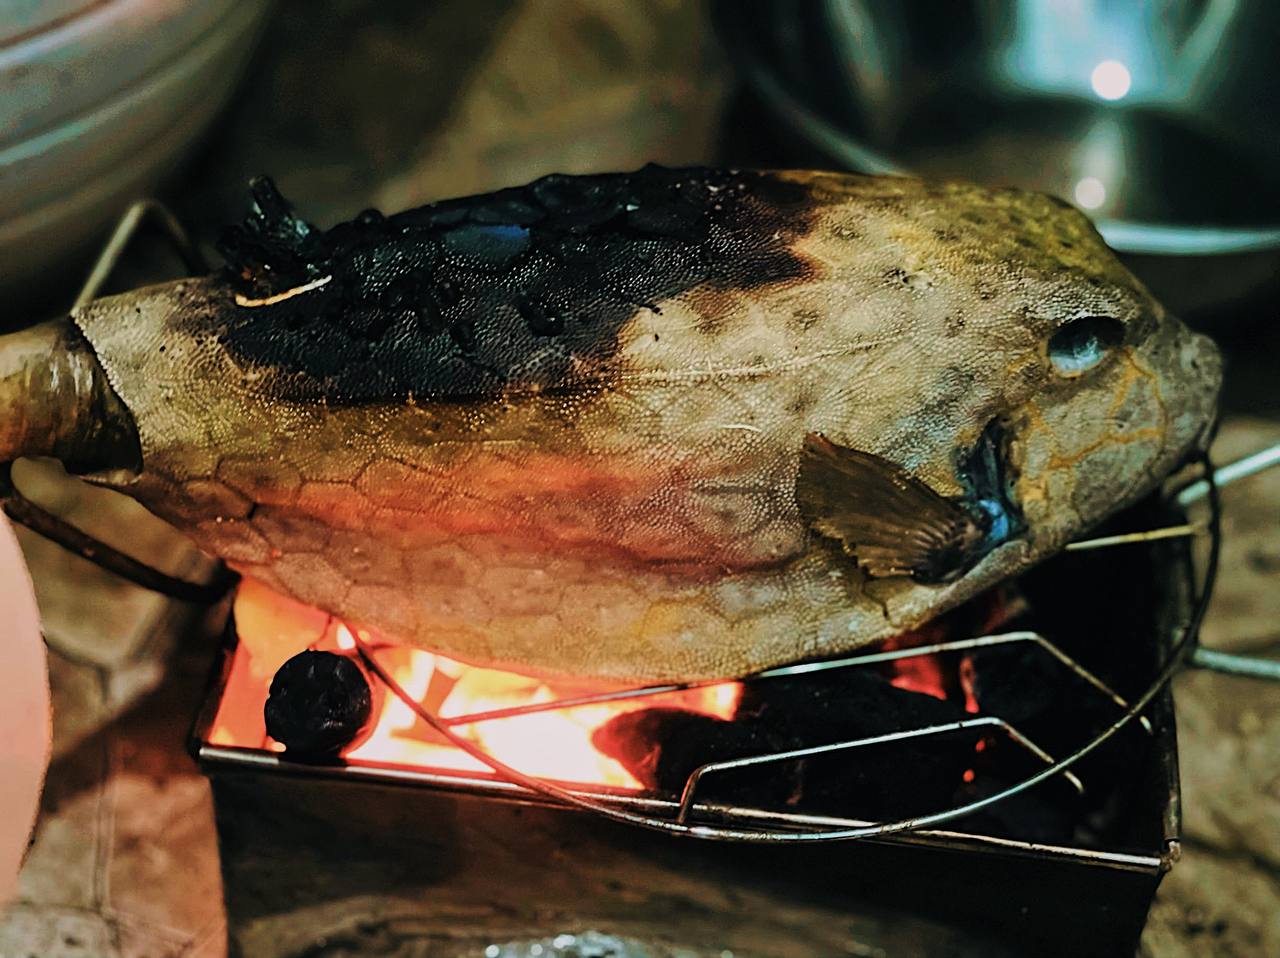 Cá bò hòm nướng - Thớ cá trắng muốt, dai ngọt ẩn sau lớp vỏ gai cứng làm nên đặc sản trác tuyệt - Ảnh 5.